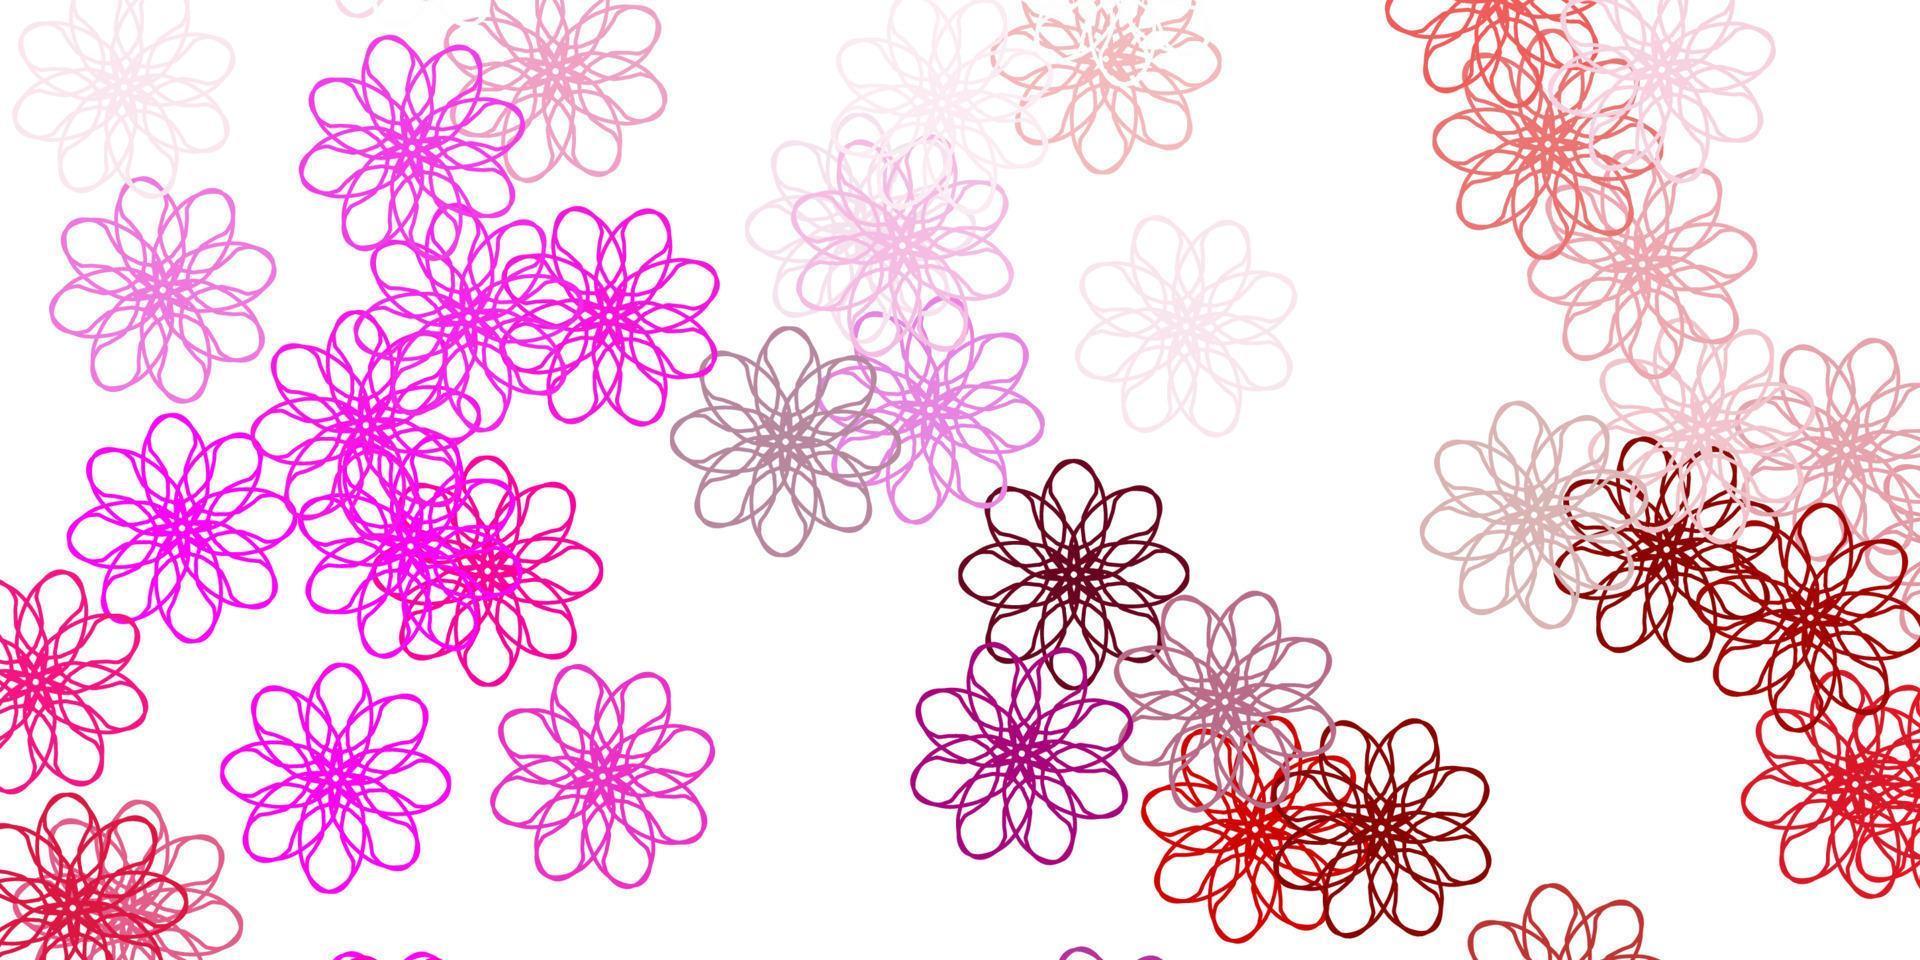 natürlicher Hintergrund des hellvioletten, rosa Vektors mit Blumen. vektor